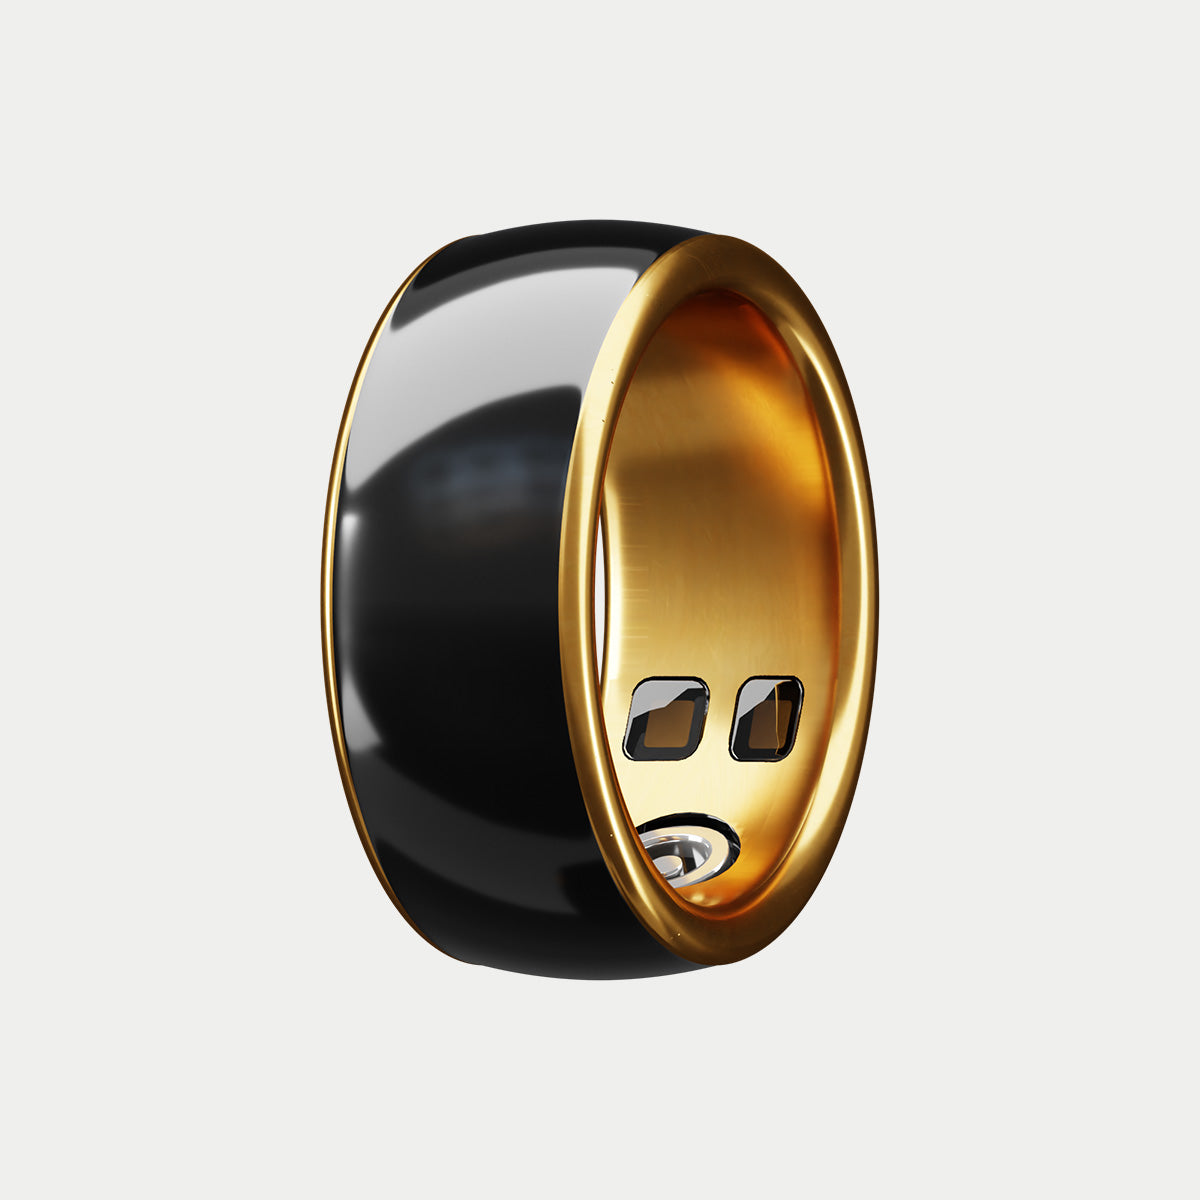 Ældre enkelt Overflod Yeyro Ring - 24/7, Health & Fitness Monitoring Smart Ring | Shop Now!